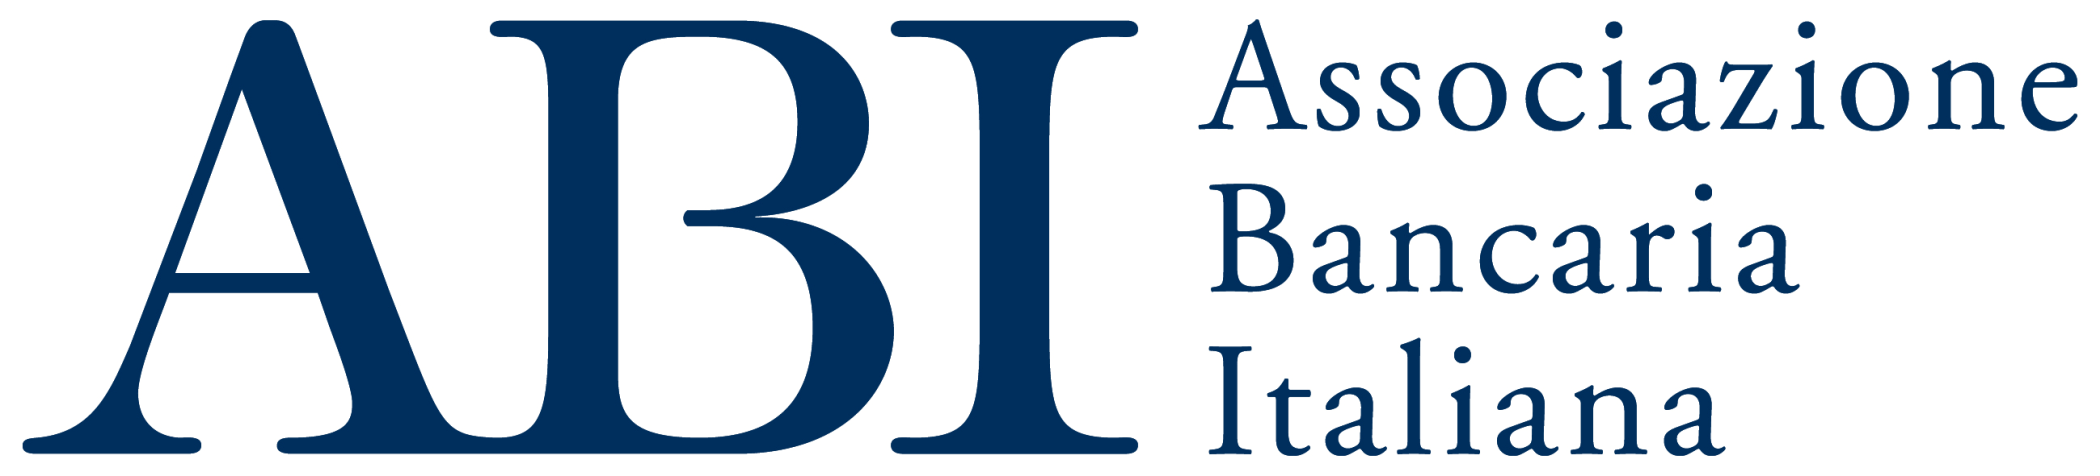 ABI - Associazione Bancaria Italiana Logo photo - 1